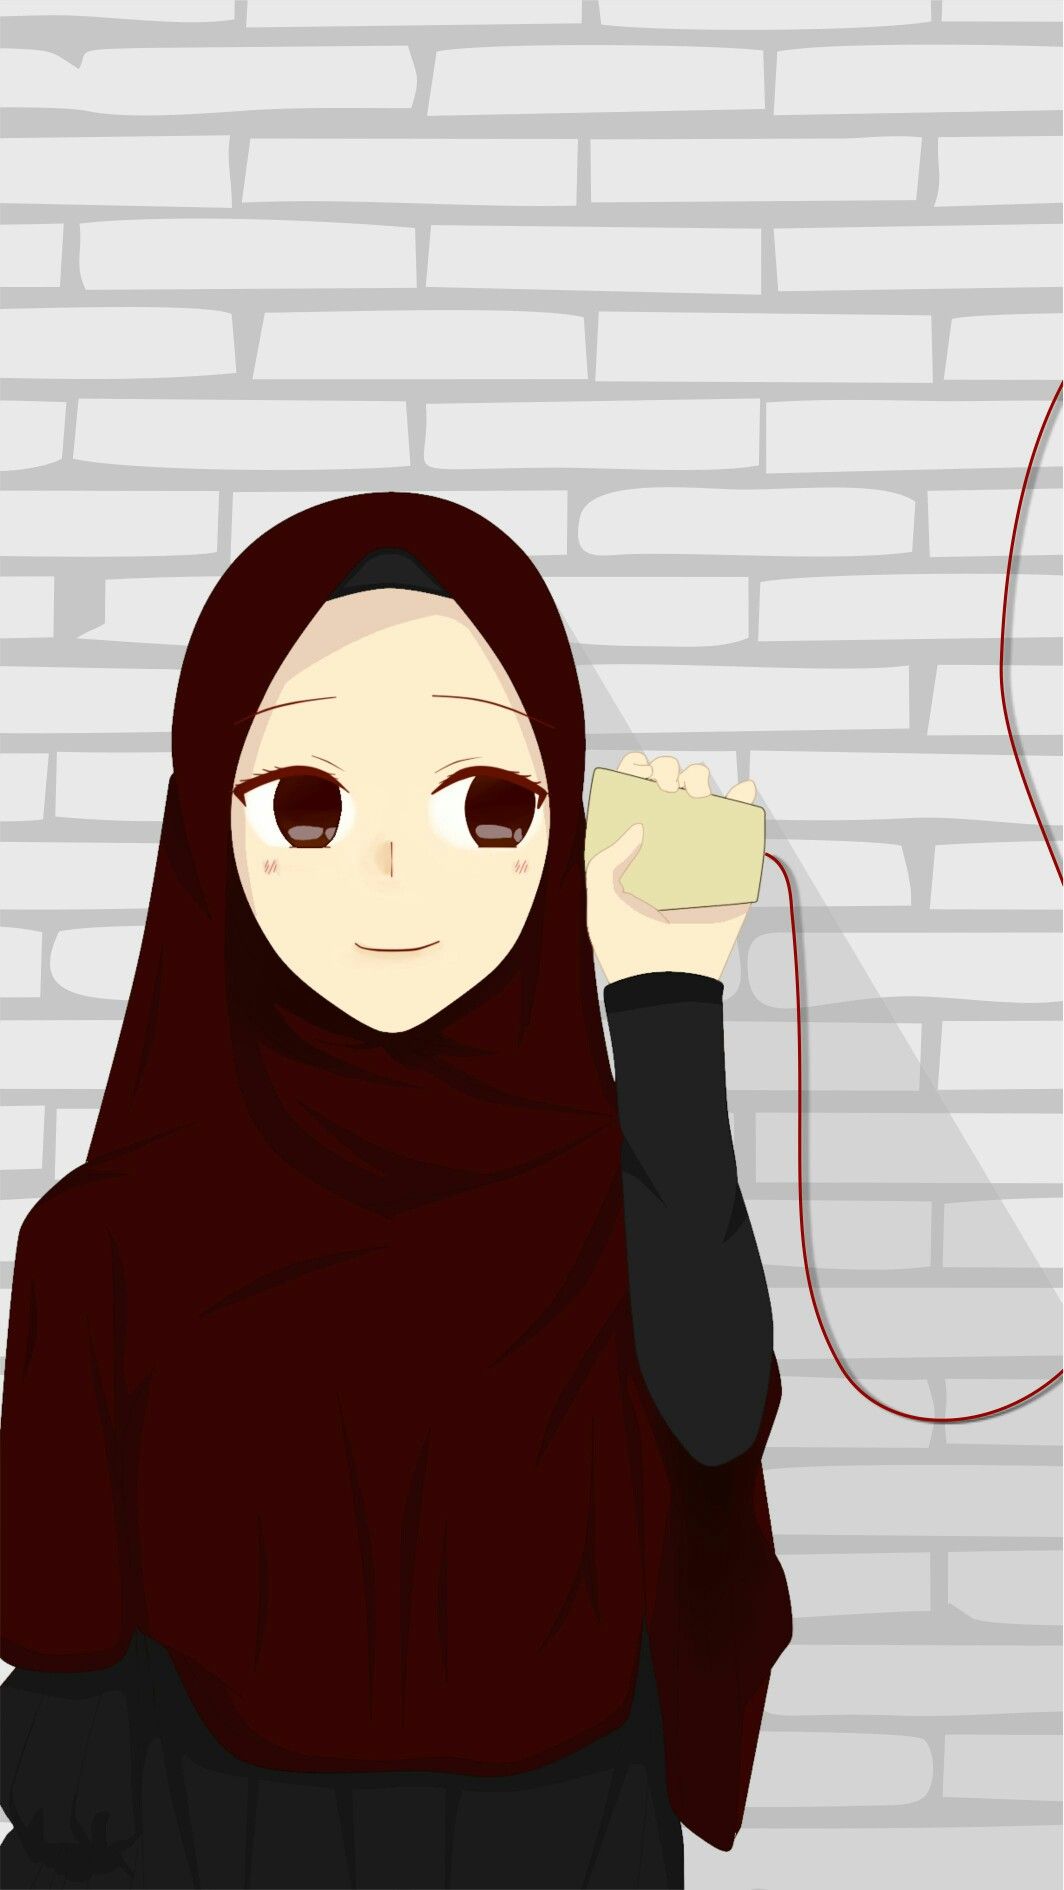 イスラム教徒のカップルの壁紙,漫画,図,架空の人物,アニメ,アニメーション